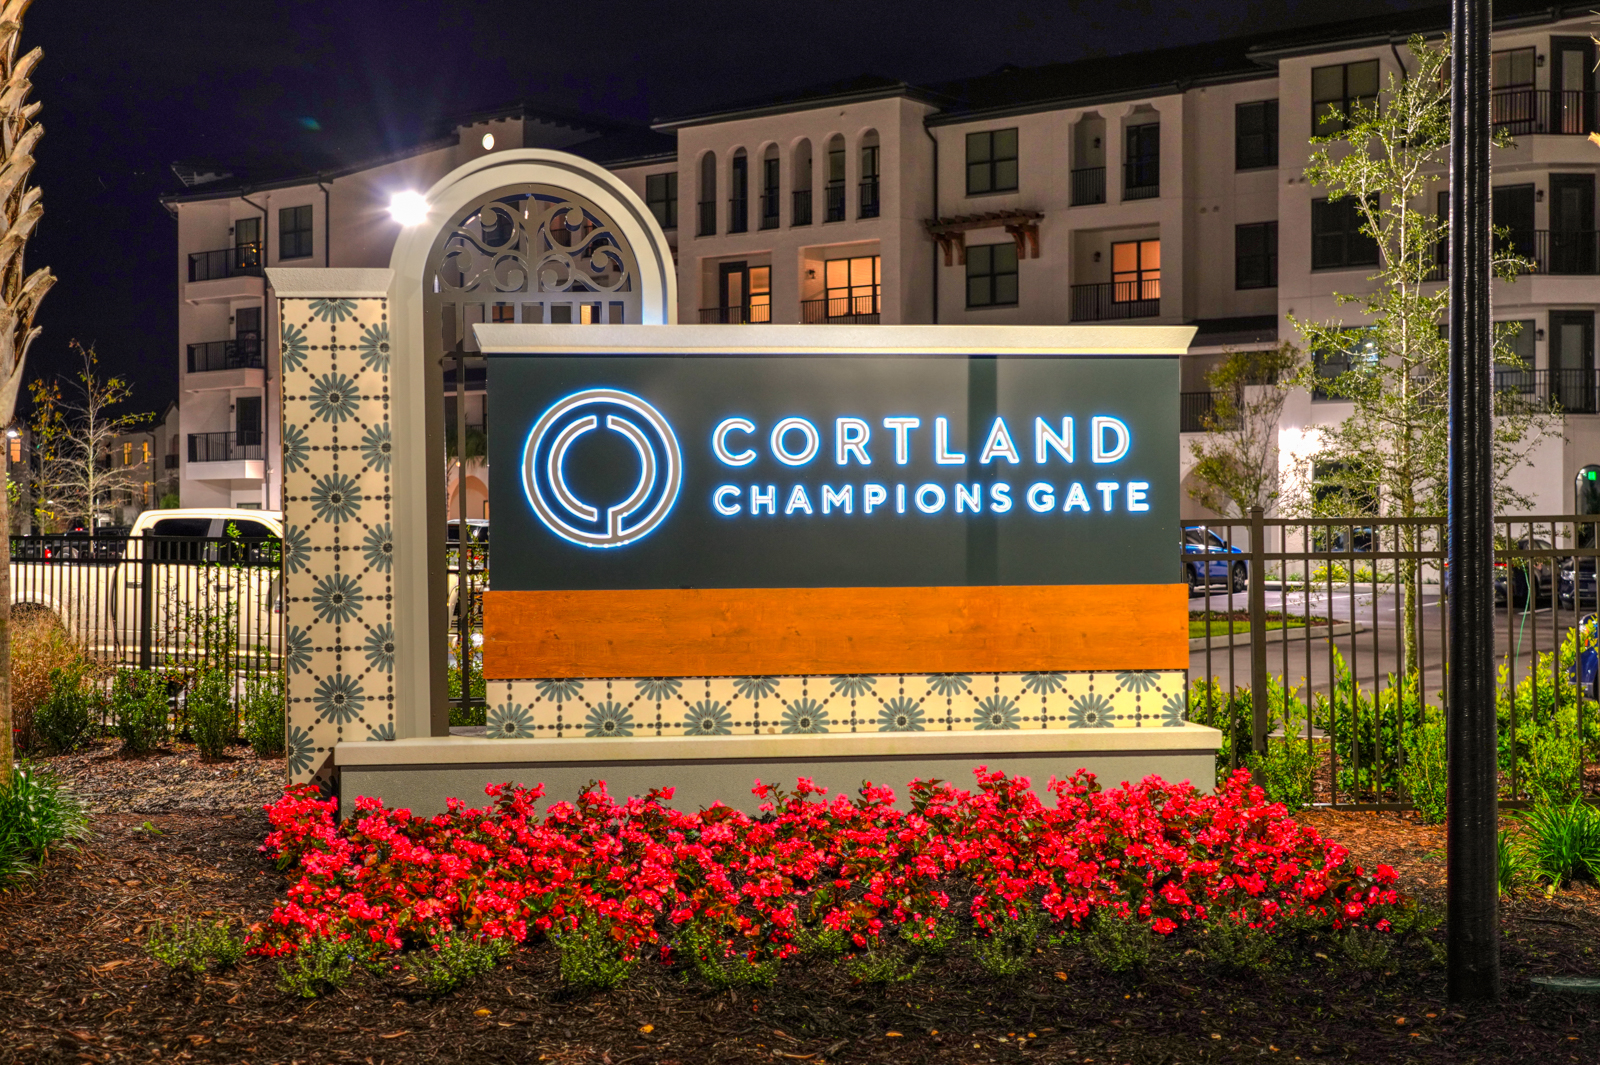 Cortland Champions Gate